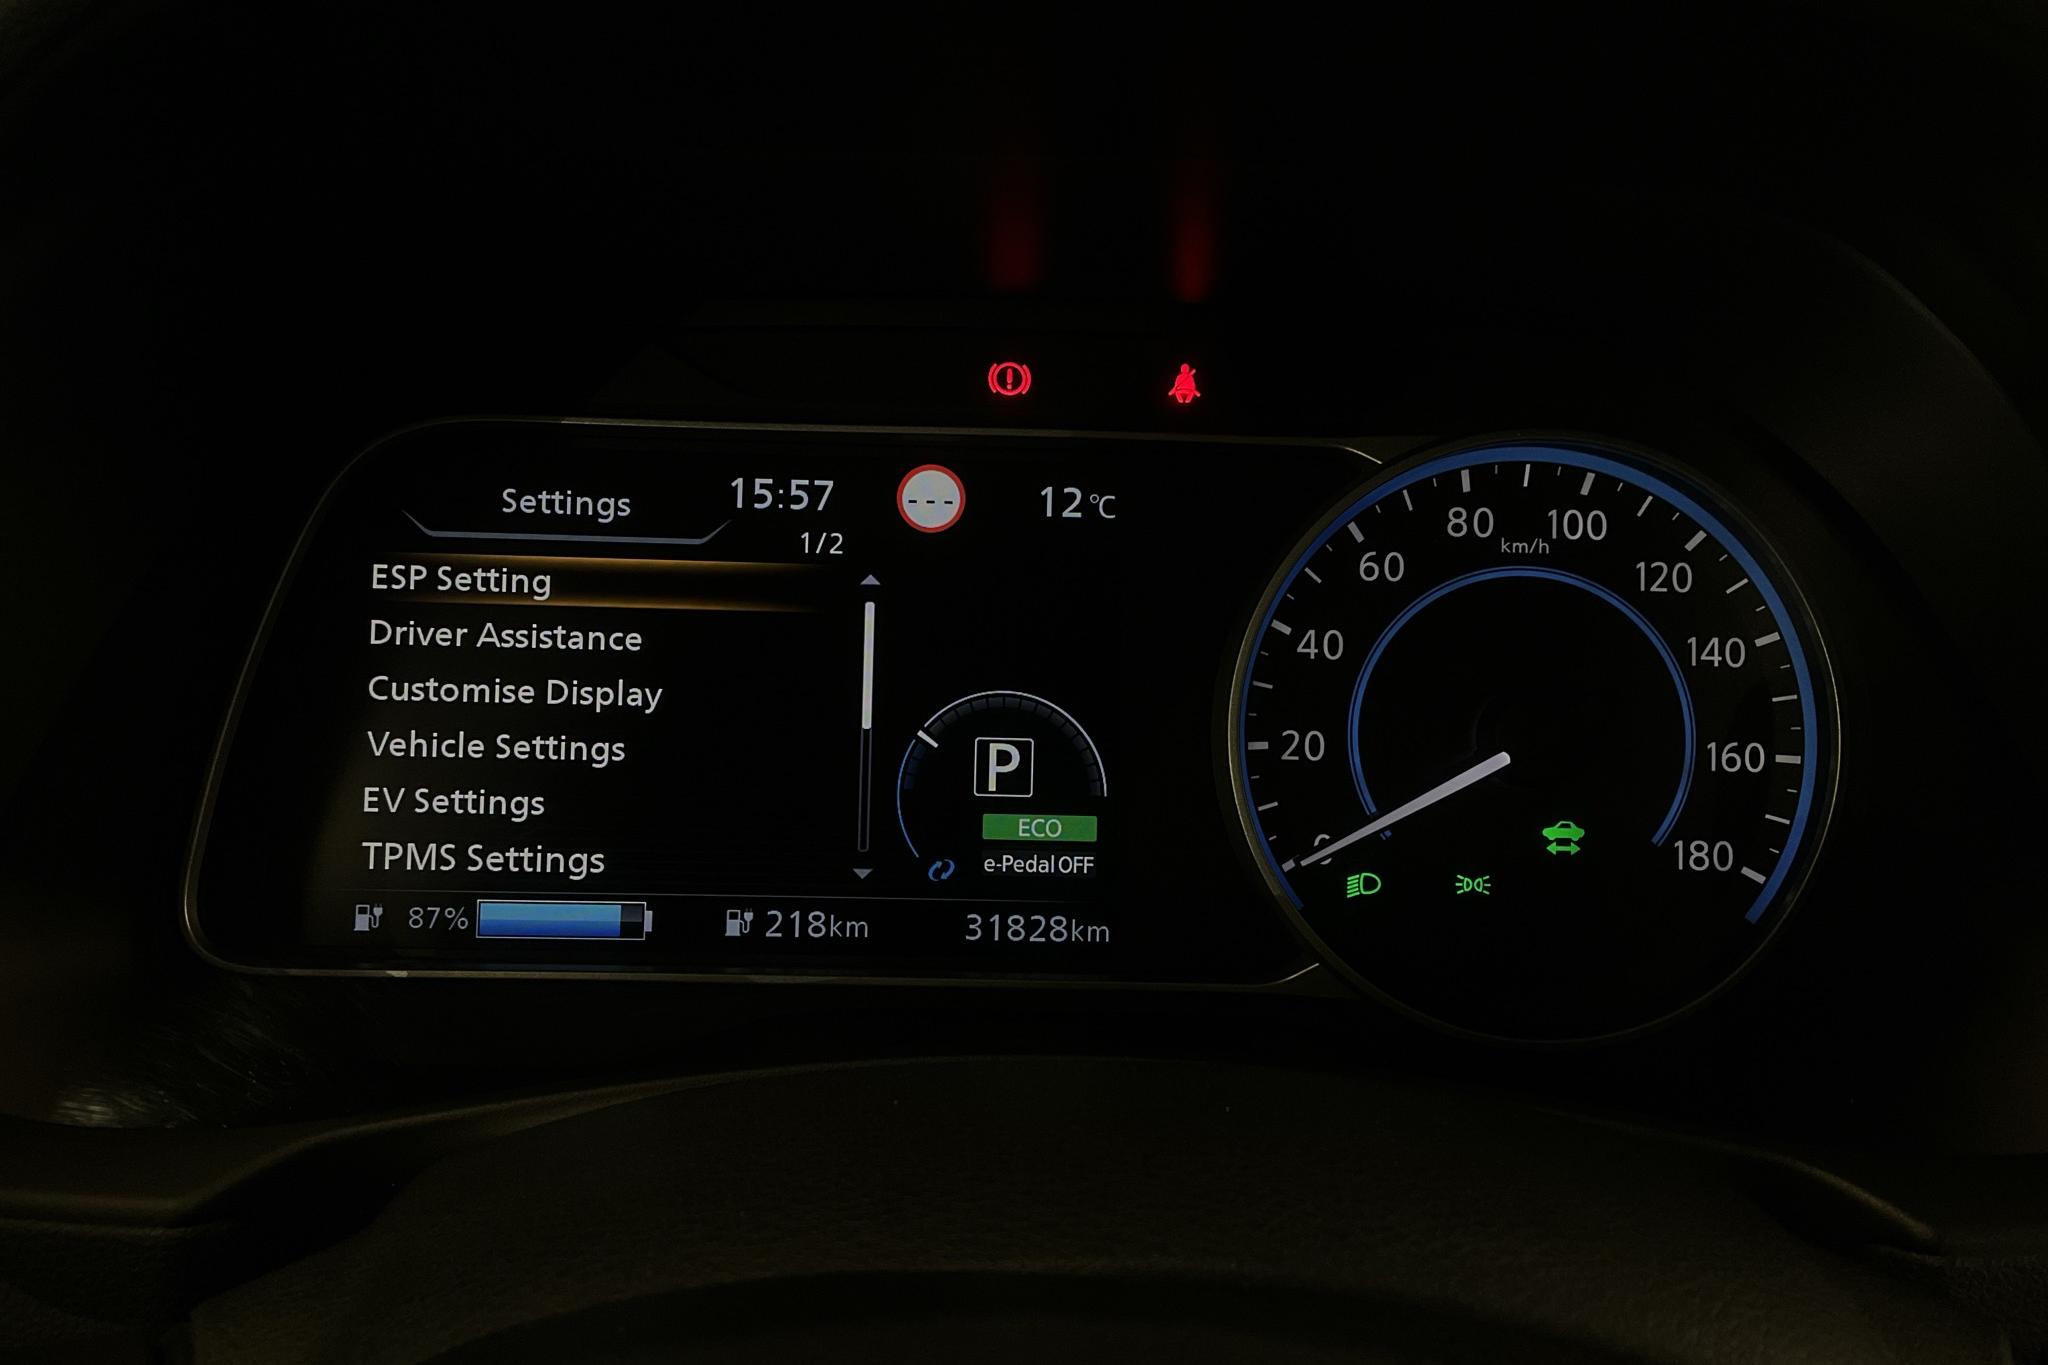 Nissan LEAF 5dr 39 kWh (150hk) - 31 820 km - Automaatne - valge - 2019